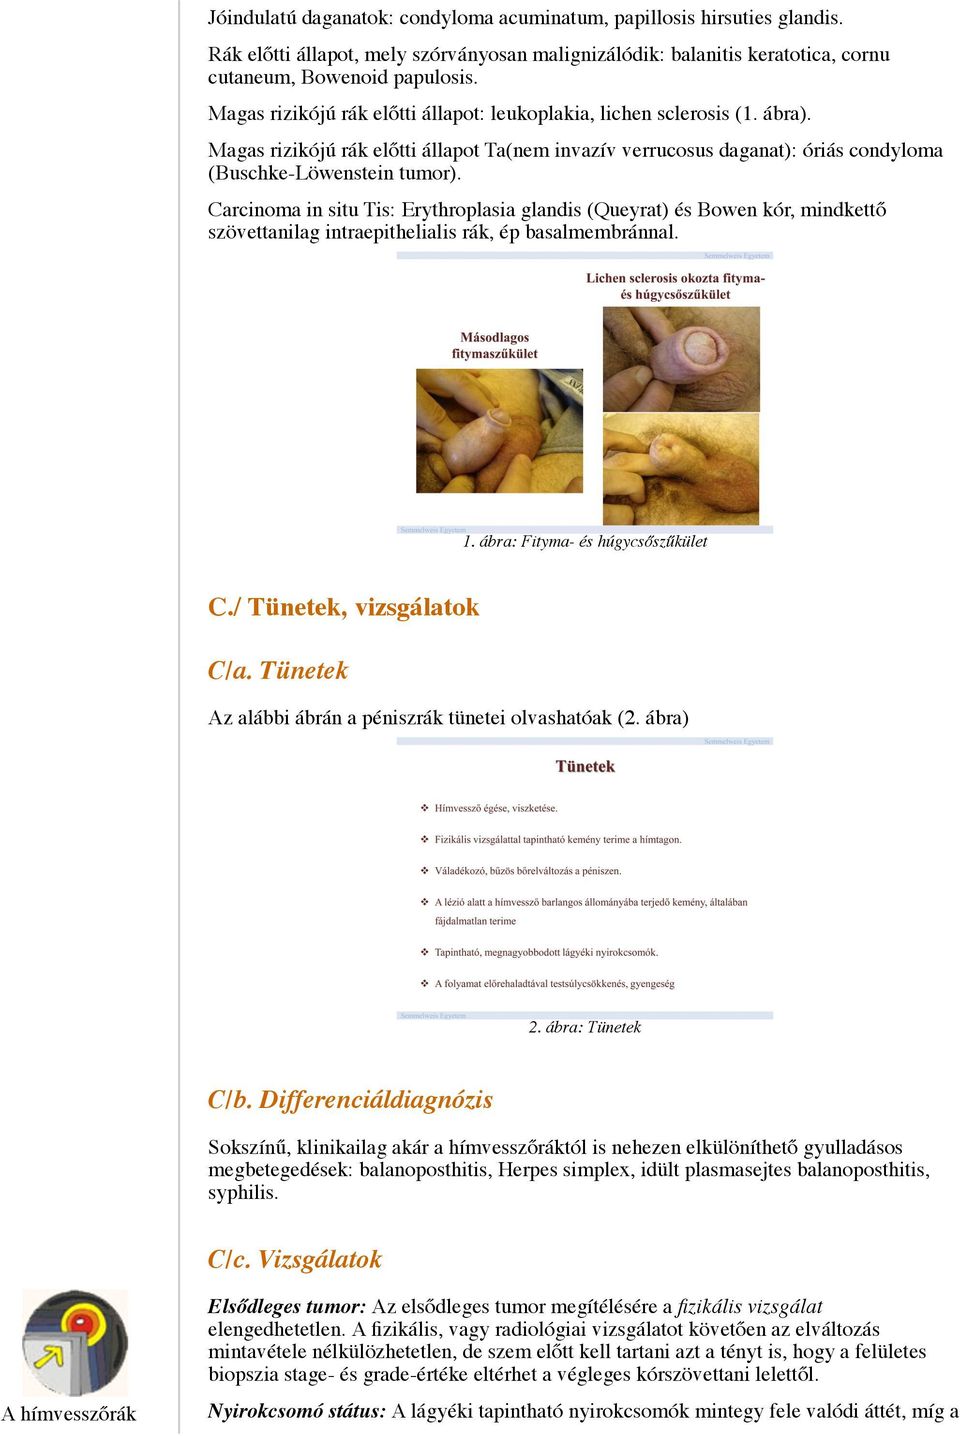 Carcinoma in situ Tis: Erythroplasia glandis (Queyrat) és Bowen kór, mindkettő szövettanilag intraepithelialis rák, ép basalmembránnal. 1. ábra: Fityma- és húgycsőszűkület C.